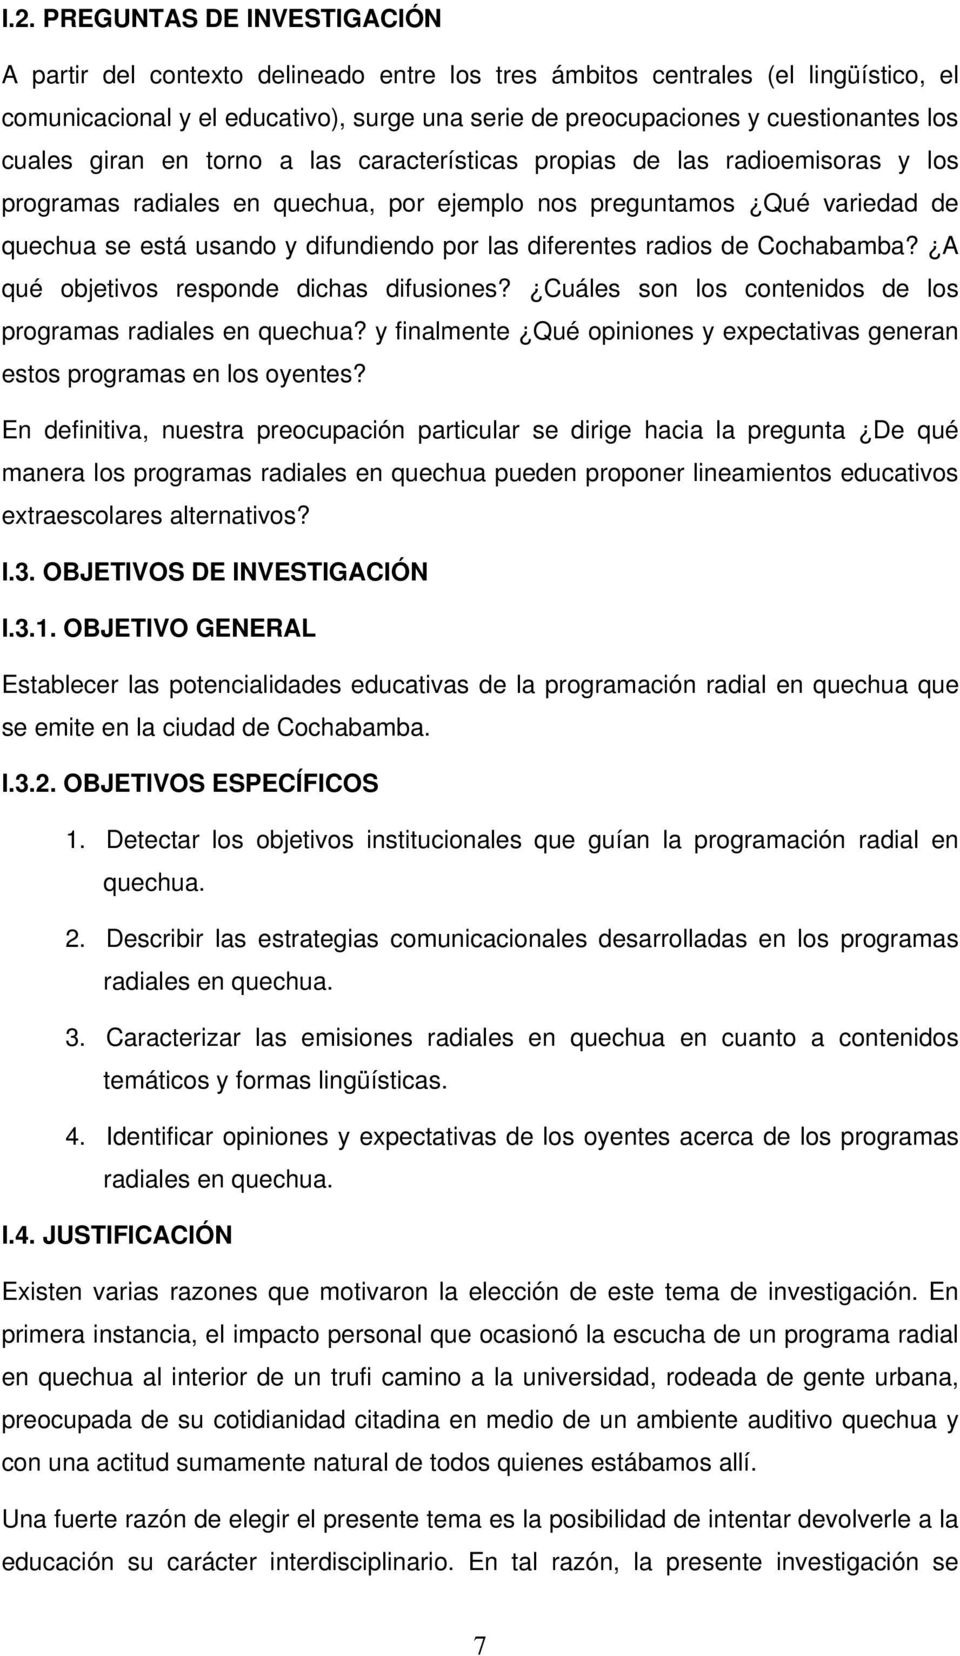 las diferentes radios de Cochabamba? A qué objetivos responde dichas difusiones? Cuáles son los contenidos de los programas radiales en quechua?